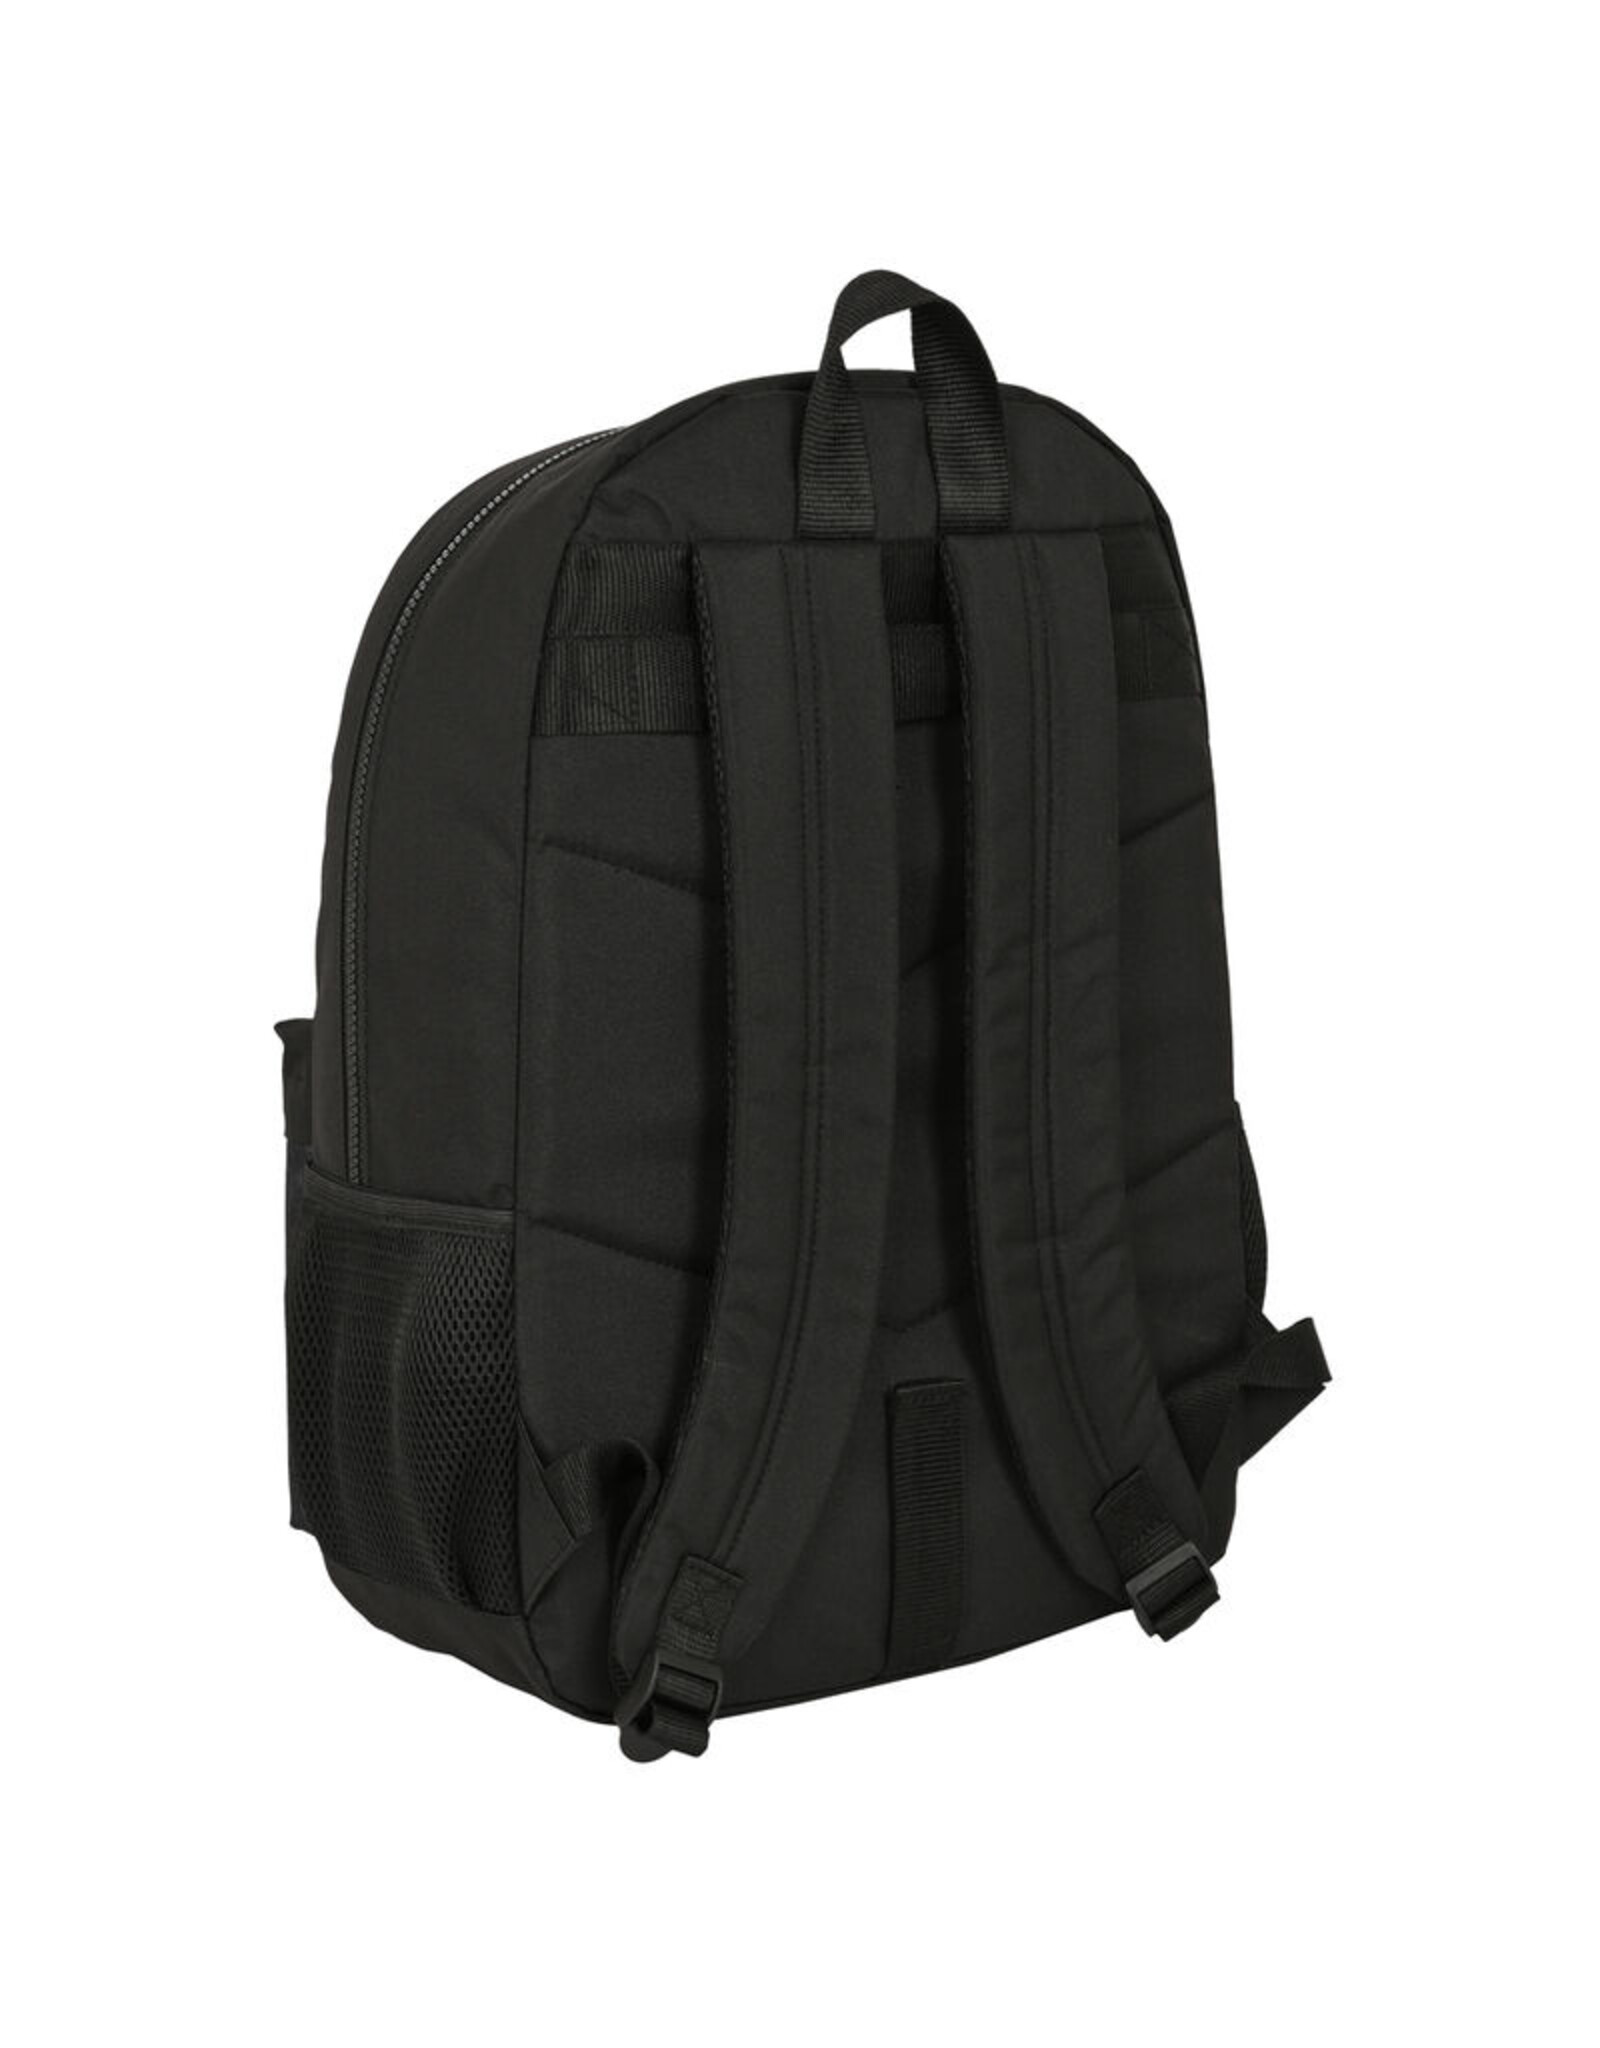 Safta Merchandise bags - Stranger Things adaptable backpack 46cm